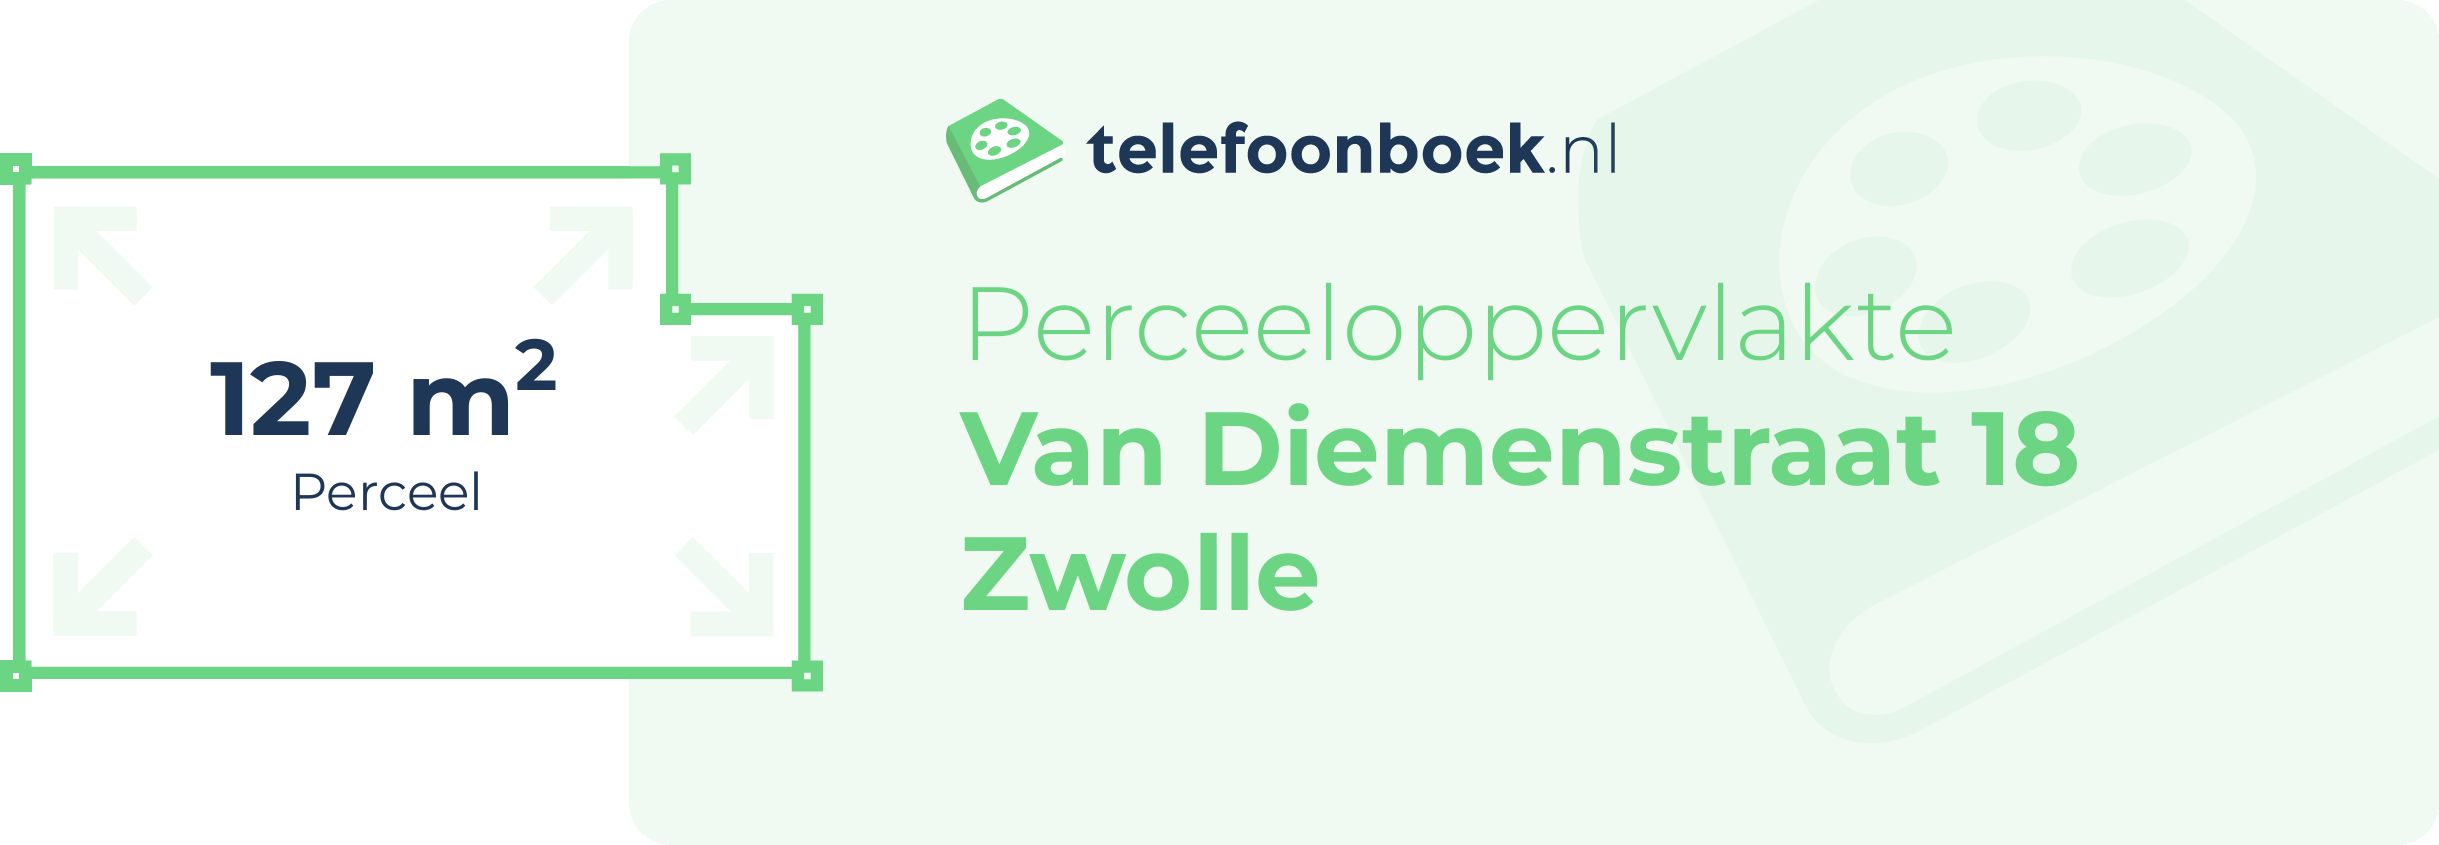 Perceeloppervlakte Van Diemenstraat 18 Zwolle